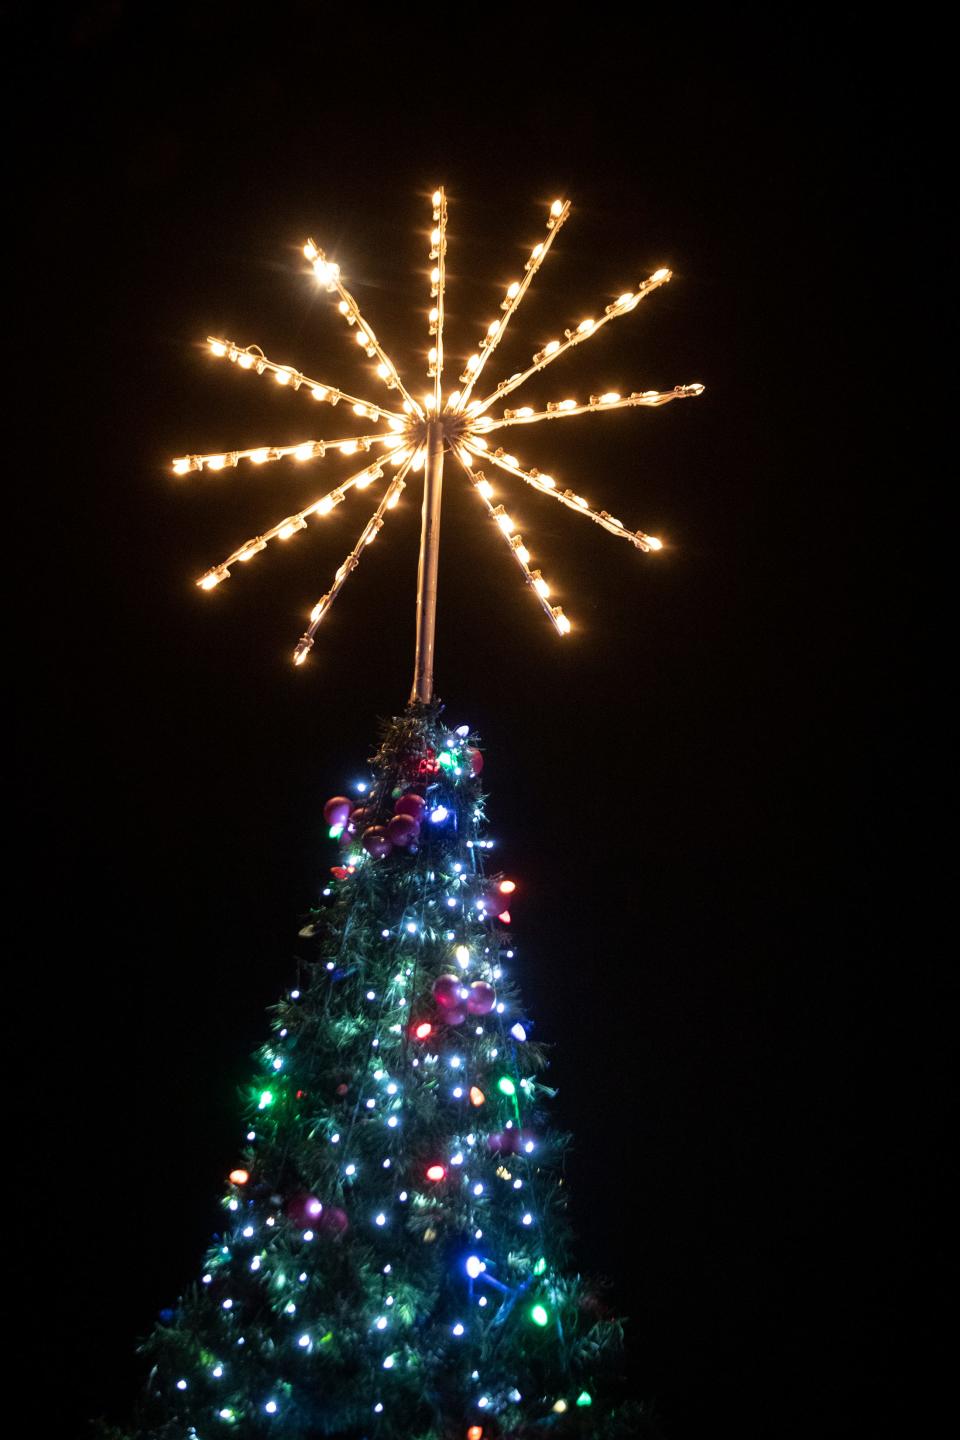 La Quinta Tree Lighting Ceremony took place at Civic Center Campus in La Quinta, Calif., on December 3, 2021. 